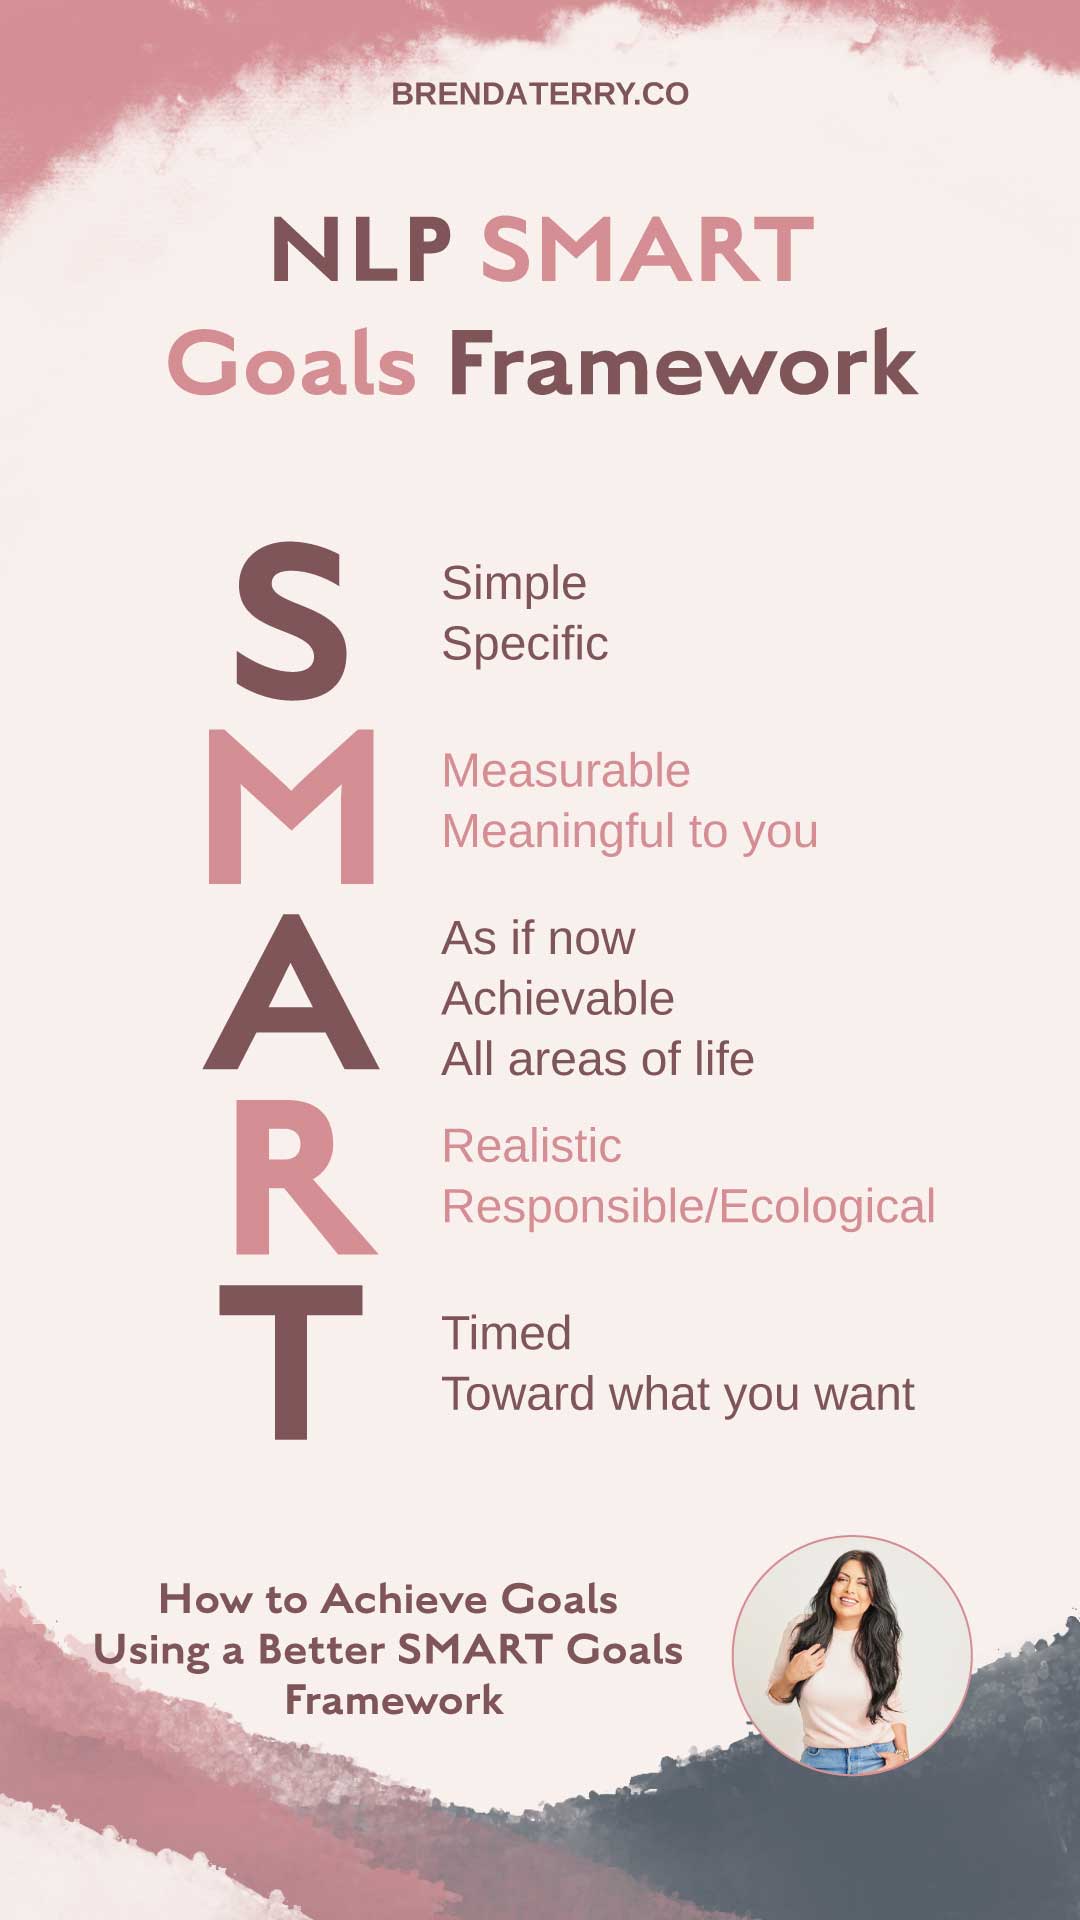 SMART goals framework